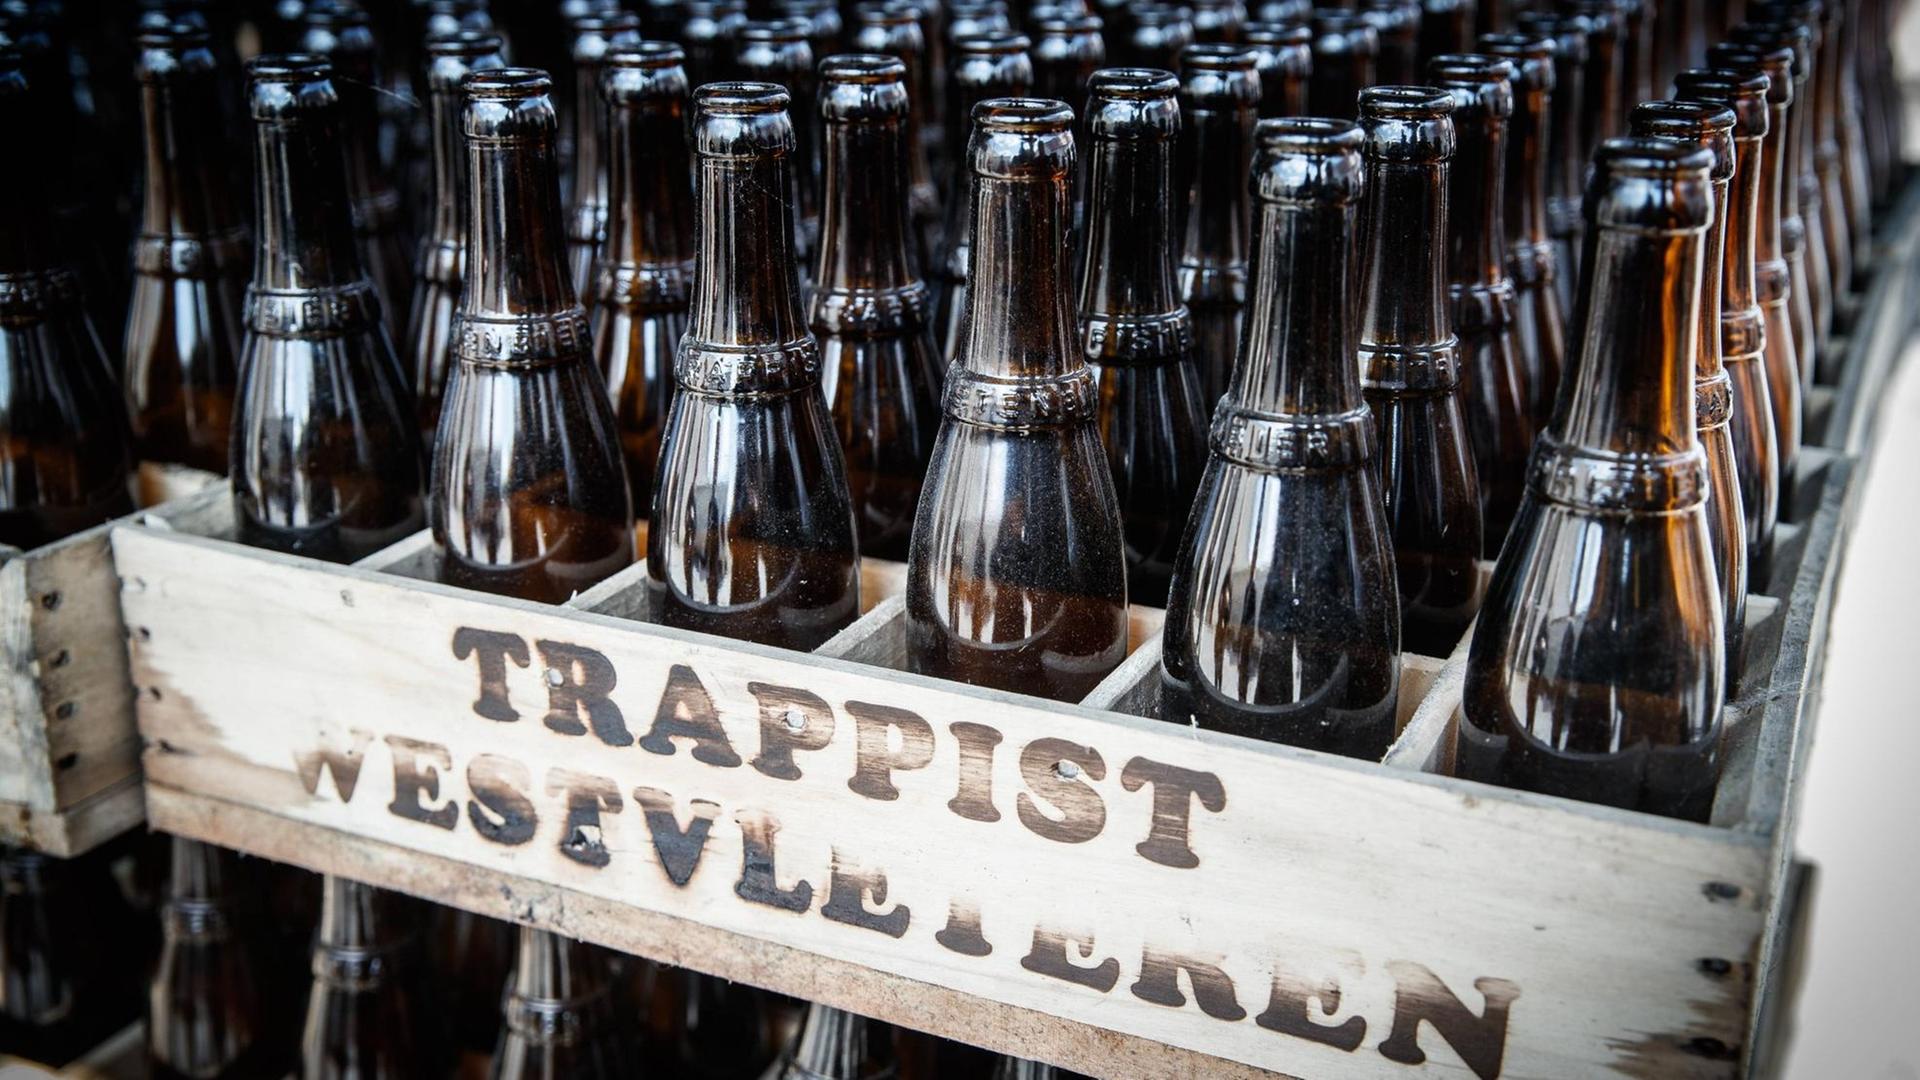 Auf Bierbörsen wurde das Bier der Trappisten-Mönche mehrfach zum Besten weltweit gekürt. Zu seinem Erfolgsrezept gehört dabei auch: Es ist schwer zu bekommen.